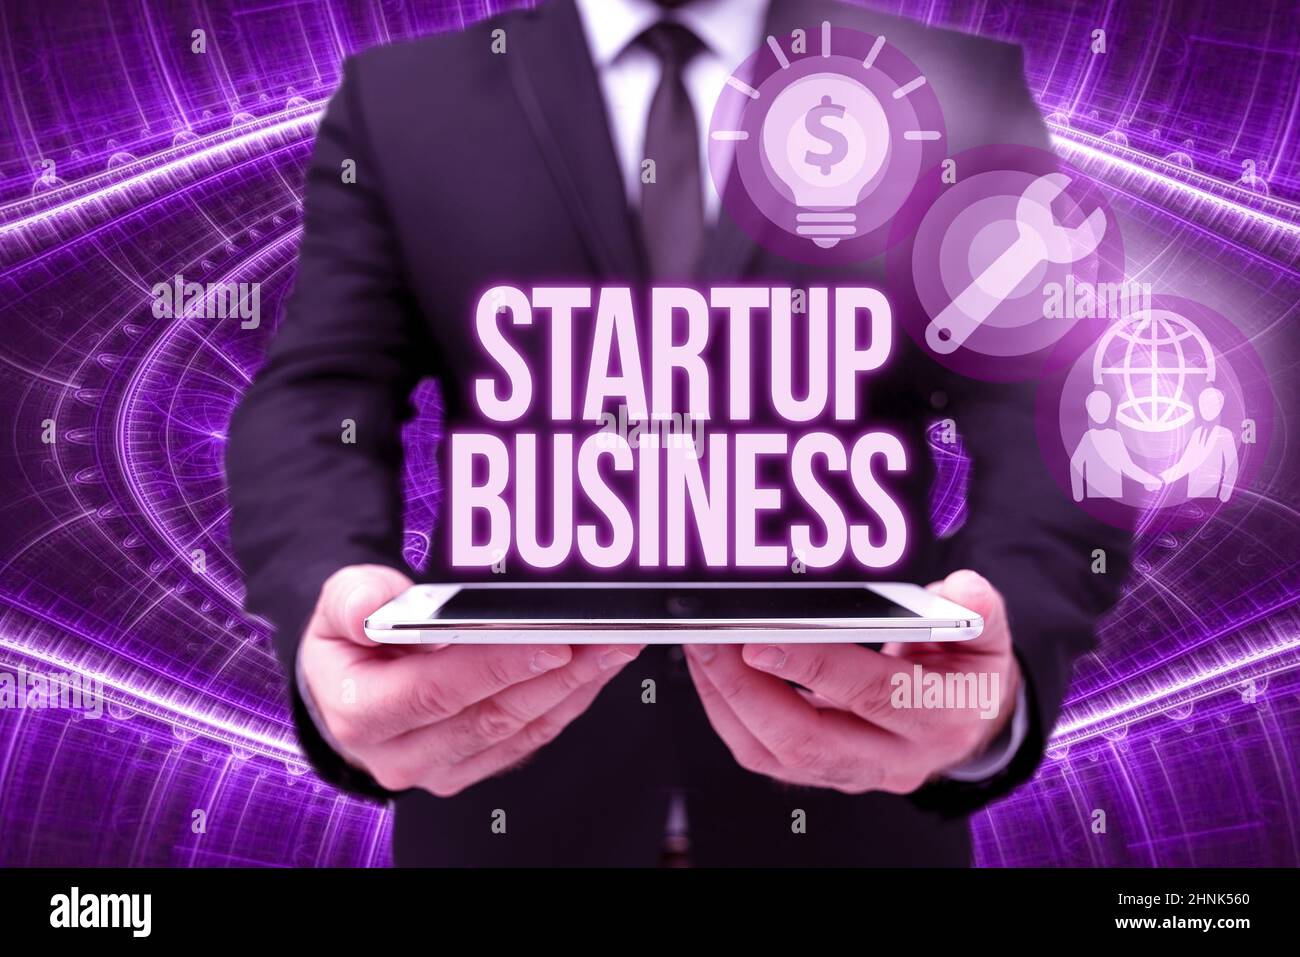 Affiche de texte montrant Startup Business, idée d'entreprise s'engageant à une nouvelle aventure frais Trading et de vente homme dans Office Uniform Holding Tablet Affichage Banque D'Images